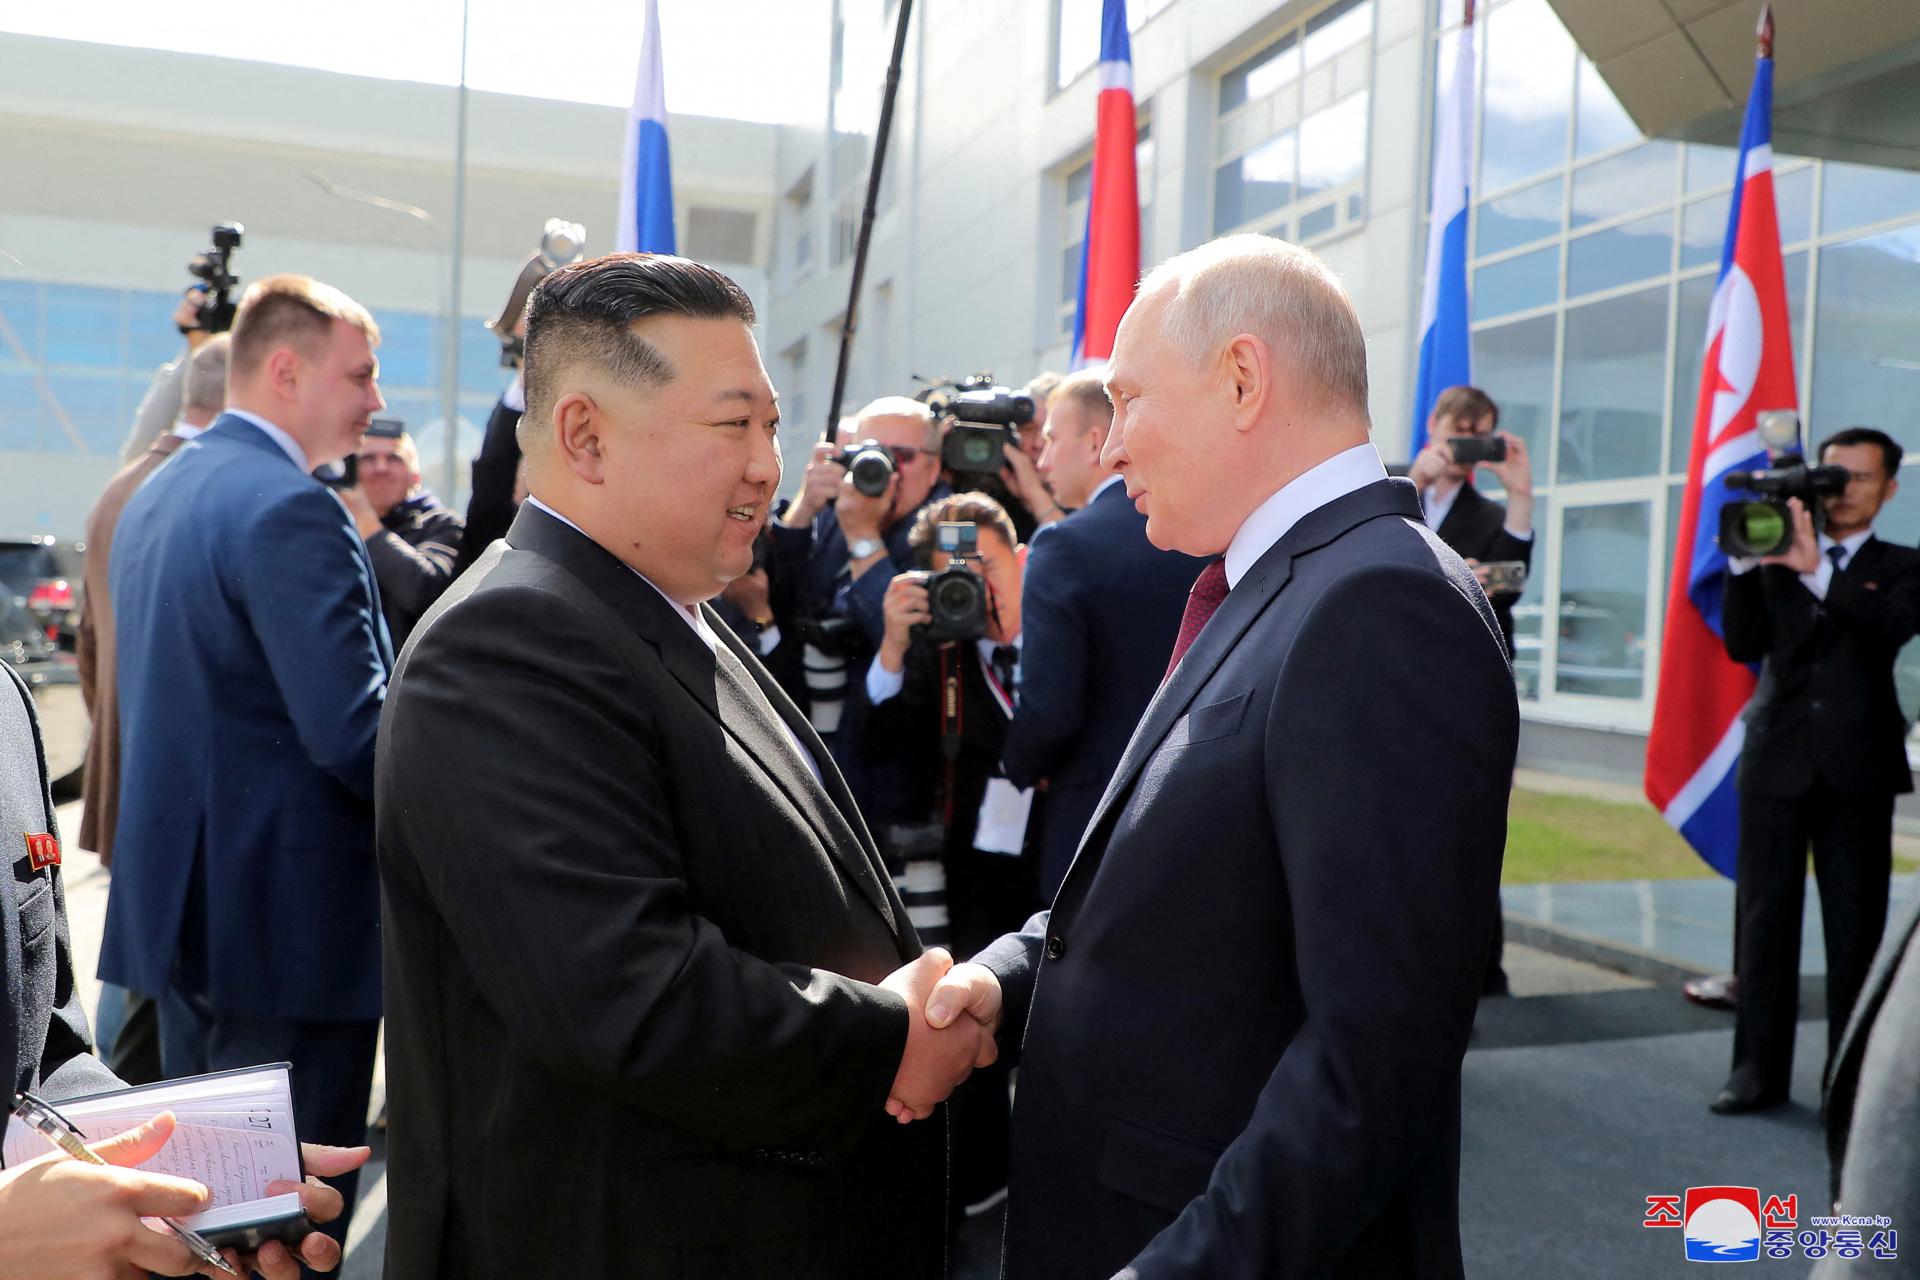 Putin prijal pozvanie Kim Čong-una na návštevu KĽDR